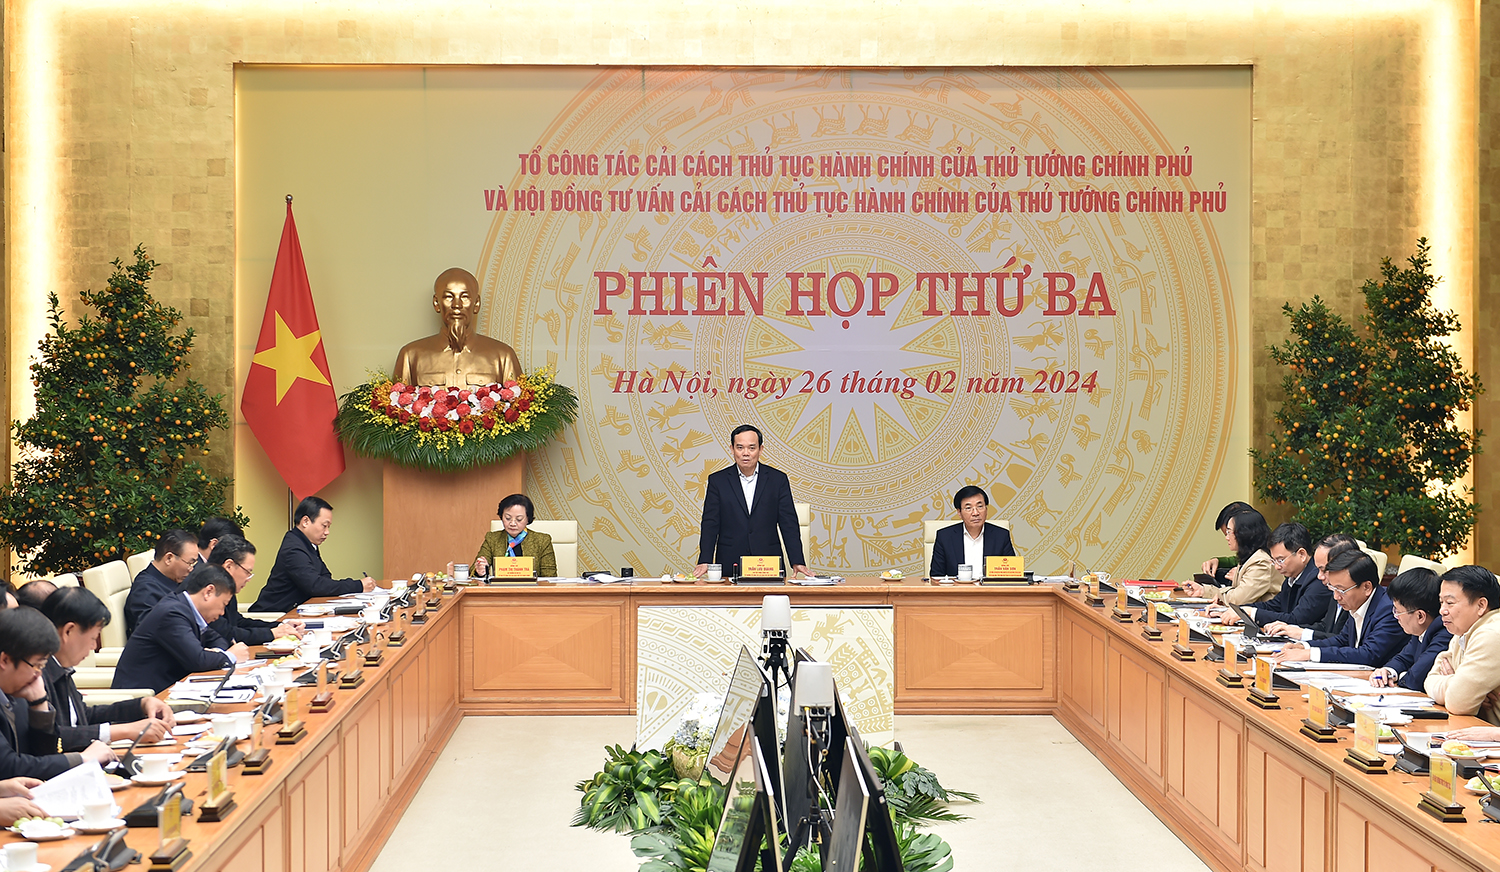 Phiên họp thứ ba của Tổ công tác cải cách TTHC của Thủ tướng Chính phủ và Hội đồng tư vấn cải cách TTHC của Thủ tướng Chính phủ - Ảnh: VGP/Hải Minh